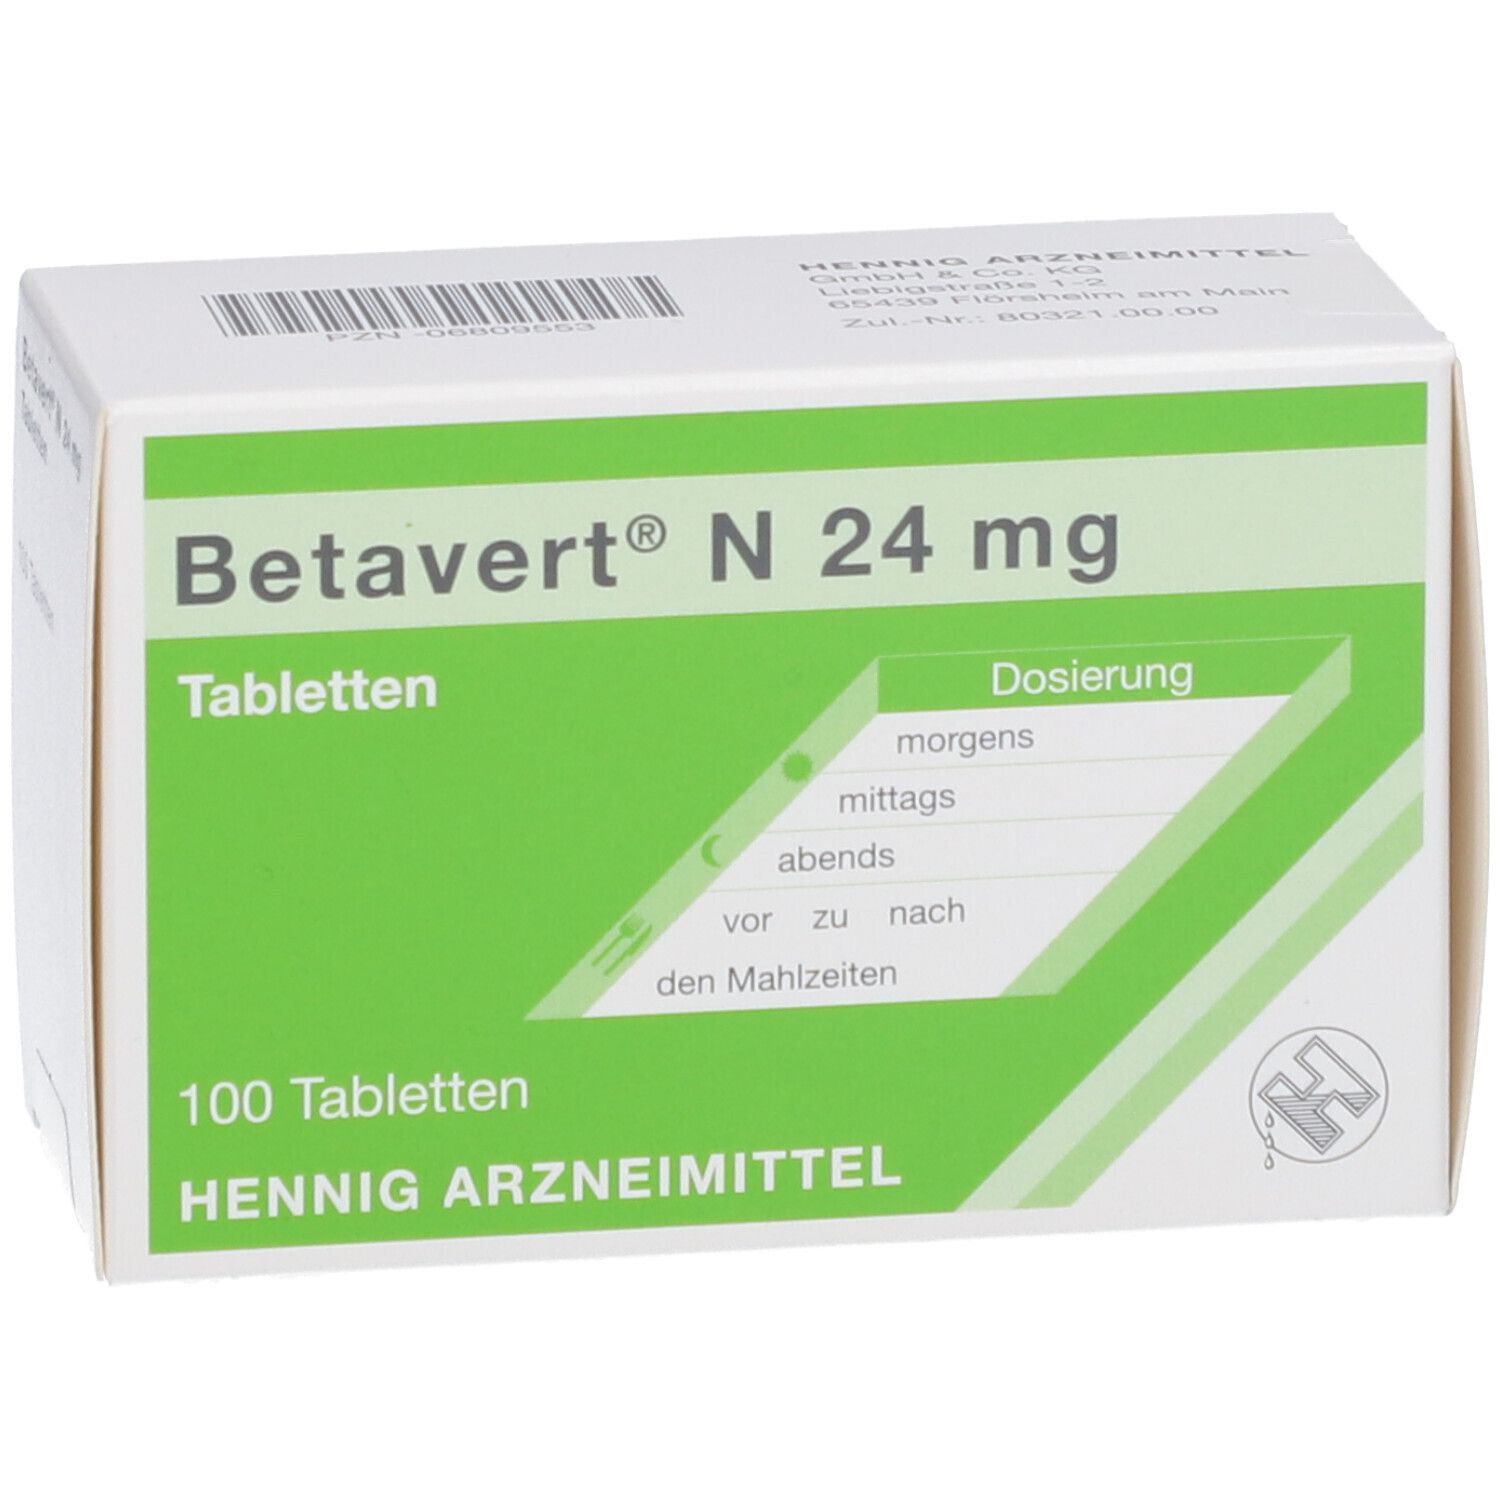 Betavert® N 24 mg